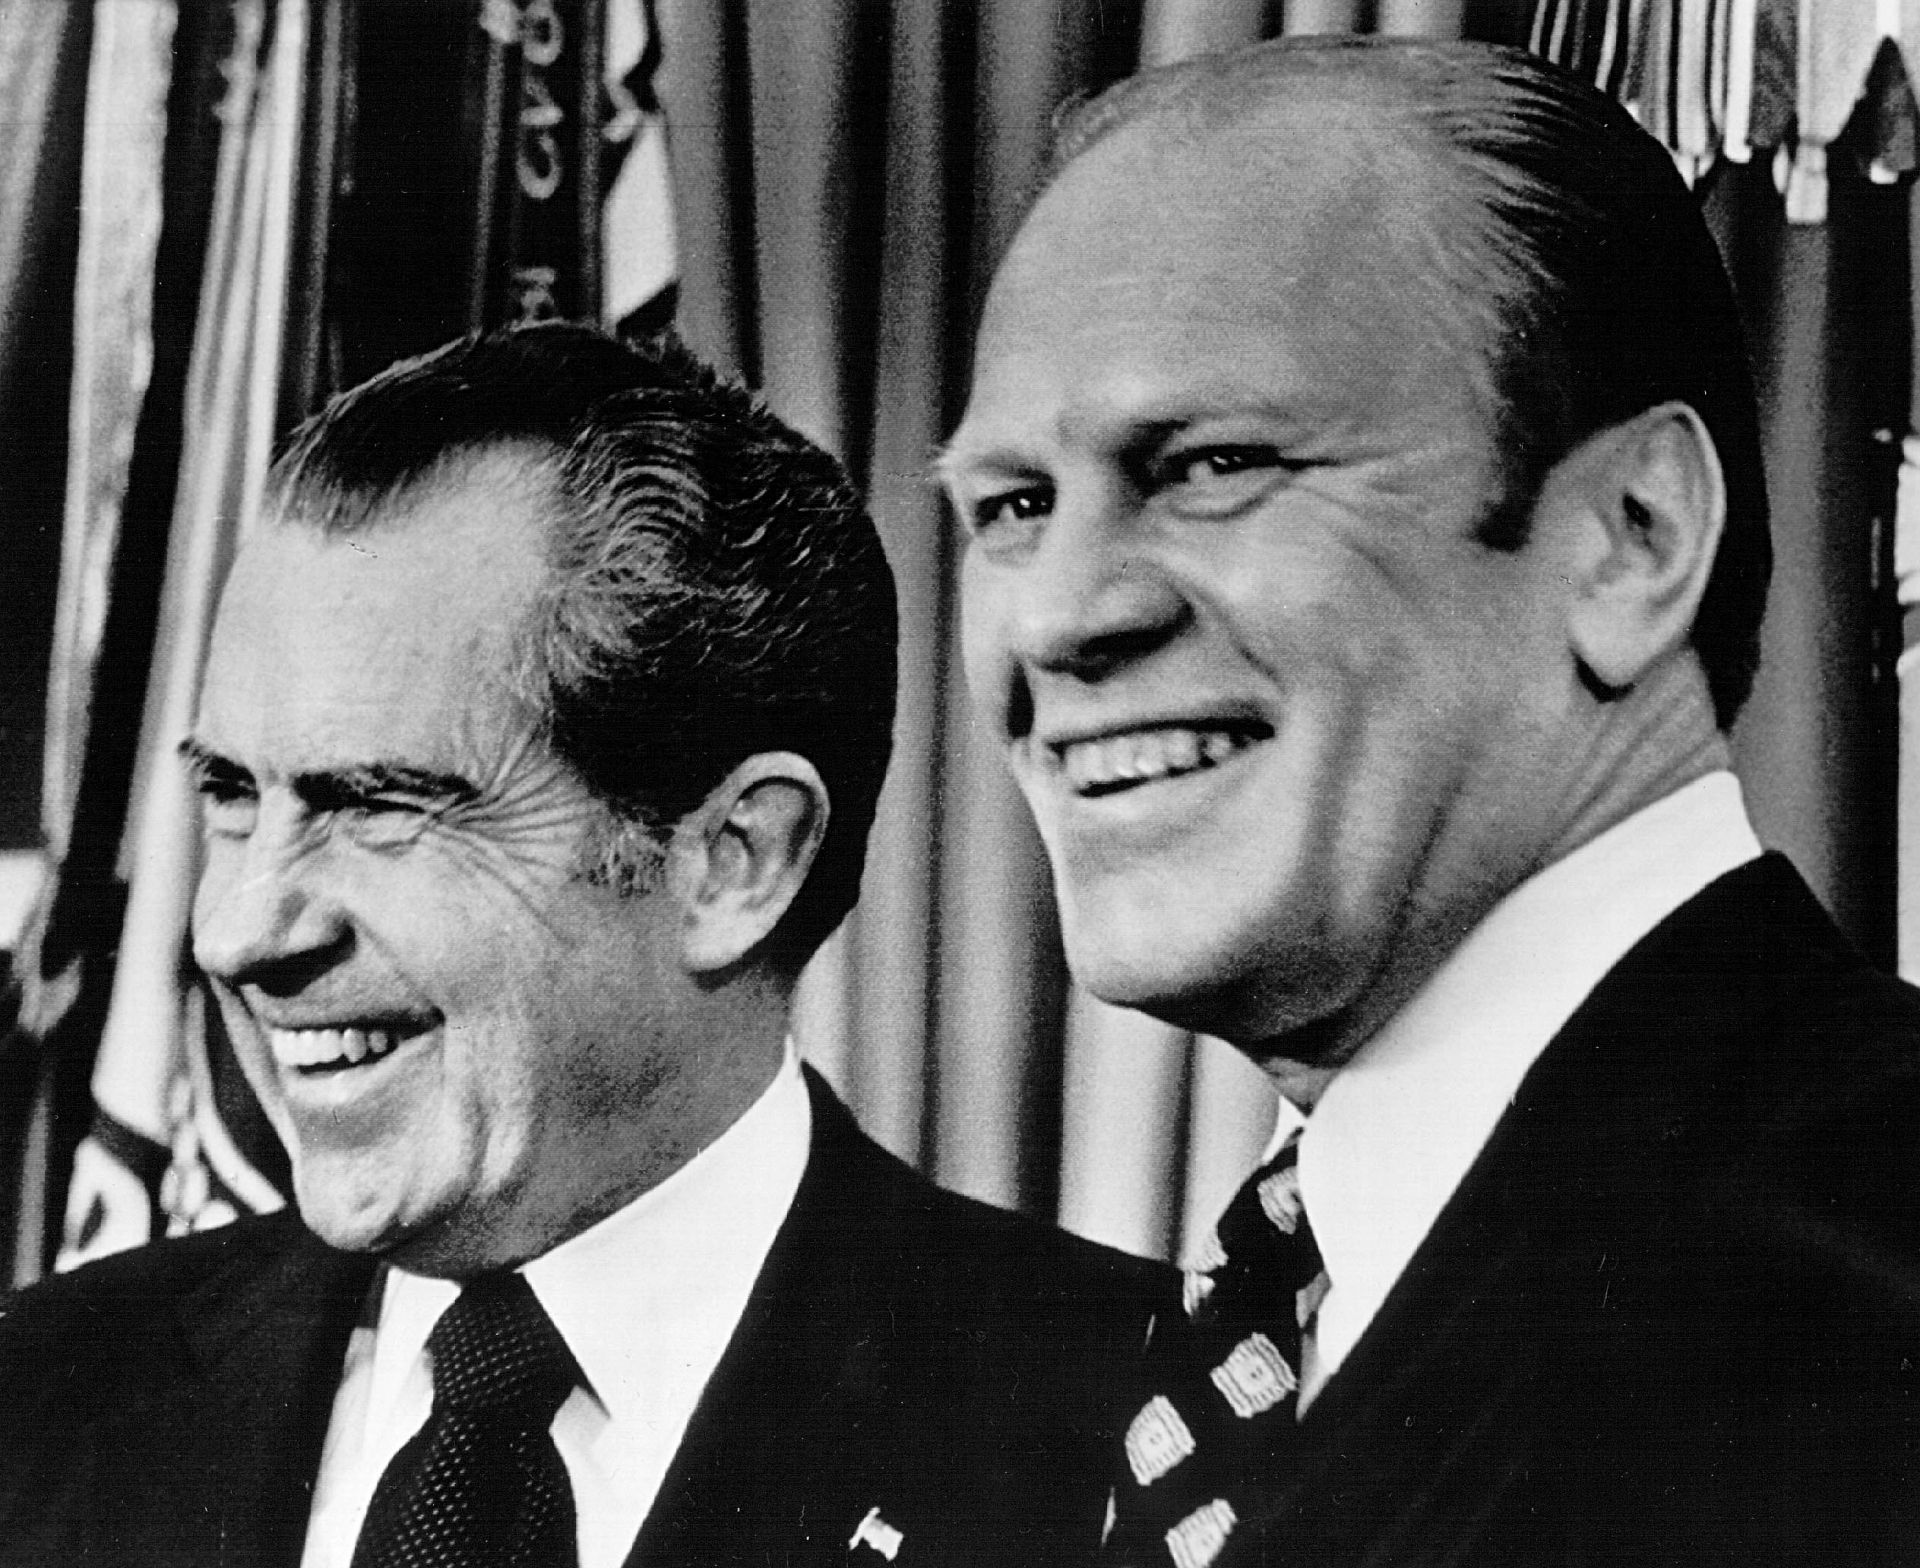 1973 година - президентът Ричард Никсън и неговият вицепрезидент Джералд Форд (вдясно), който скоро ще заеме неговия пост заради Уотъргейт